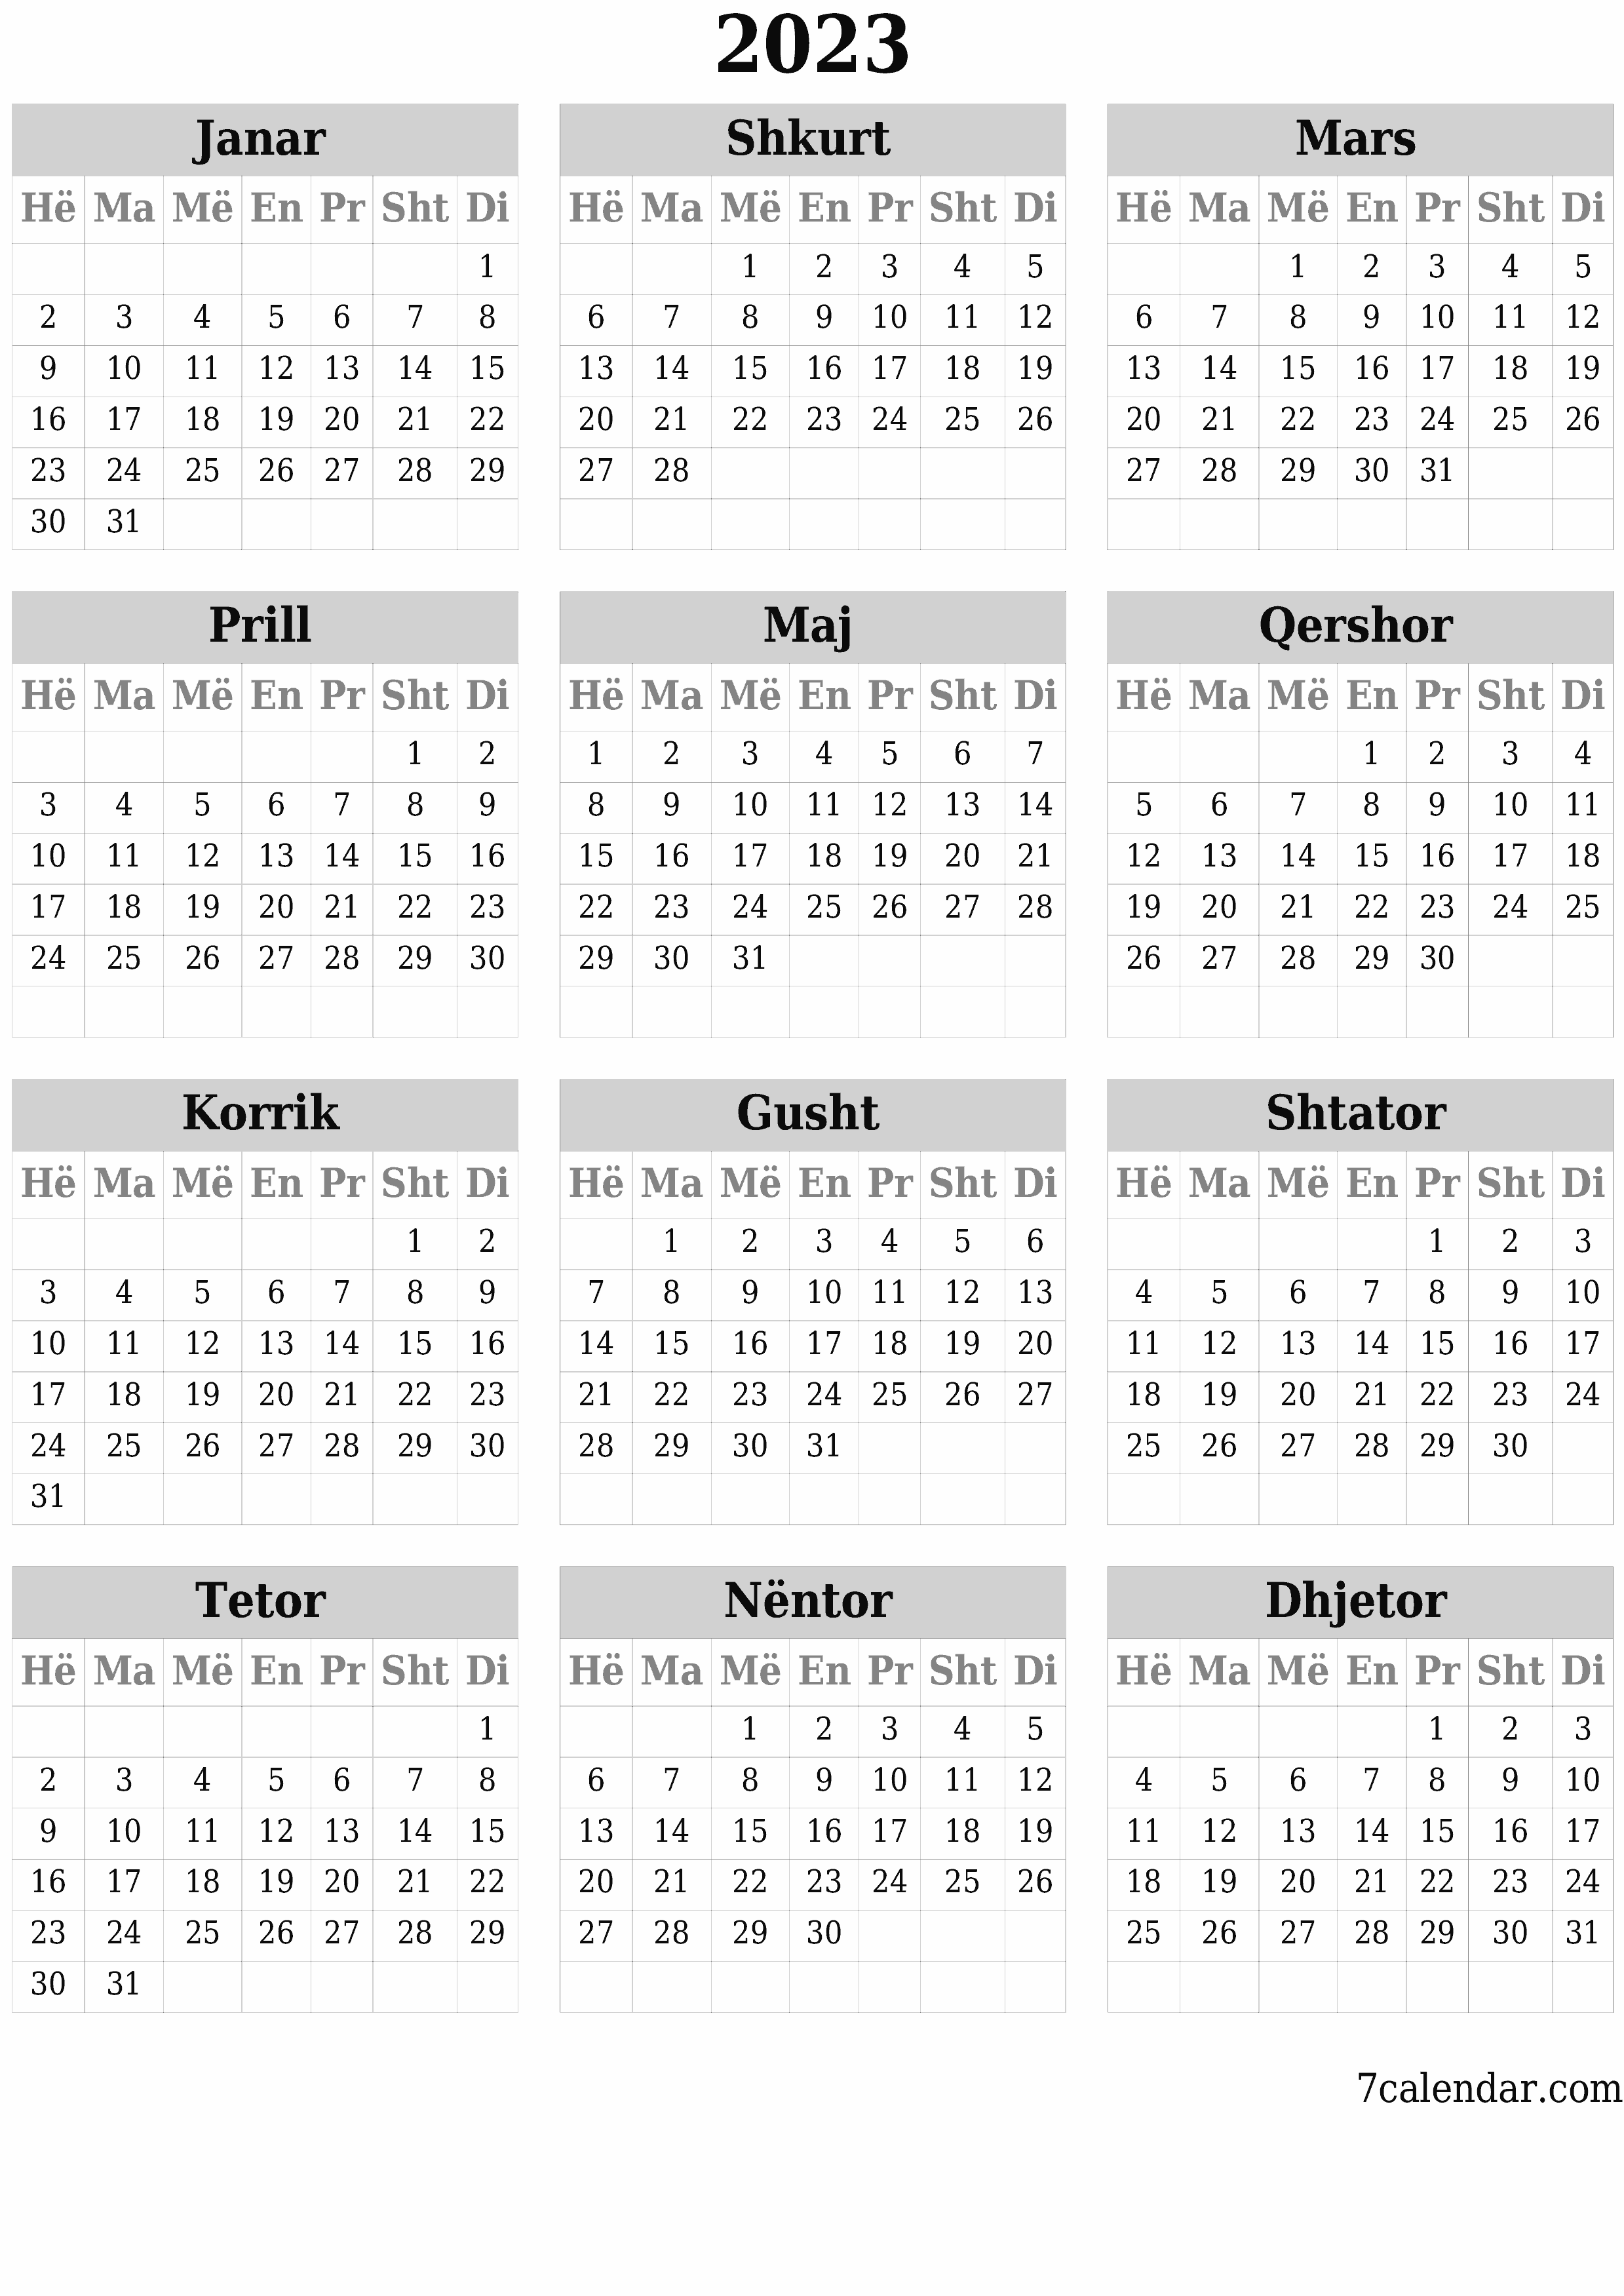 Planifikuesi bosh i kalendarit vjetor për vitin 2023 me shënime, ruani dhe printoni në PDF PNG Albanian - 7calendar.com